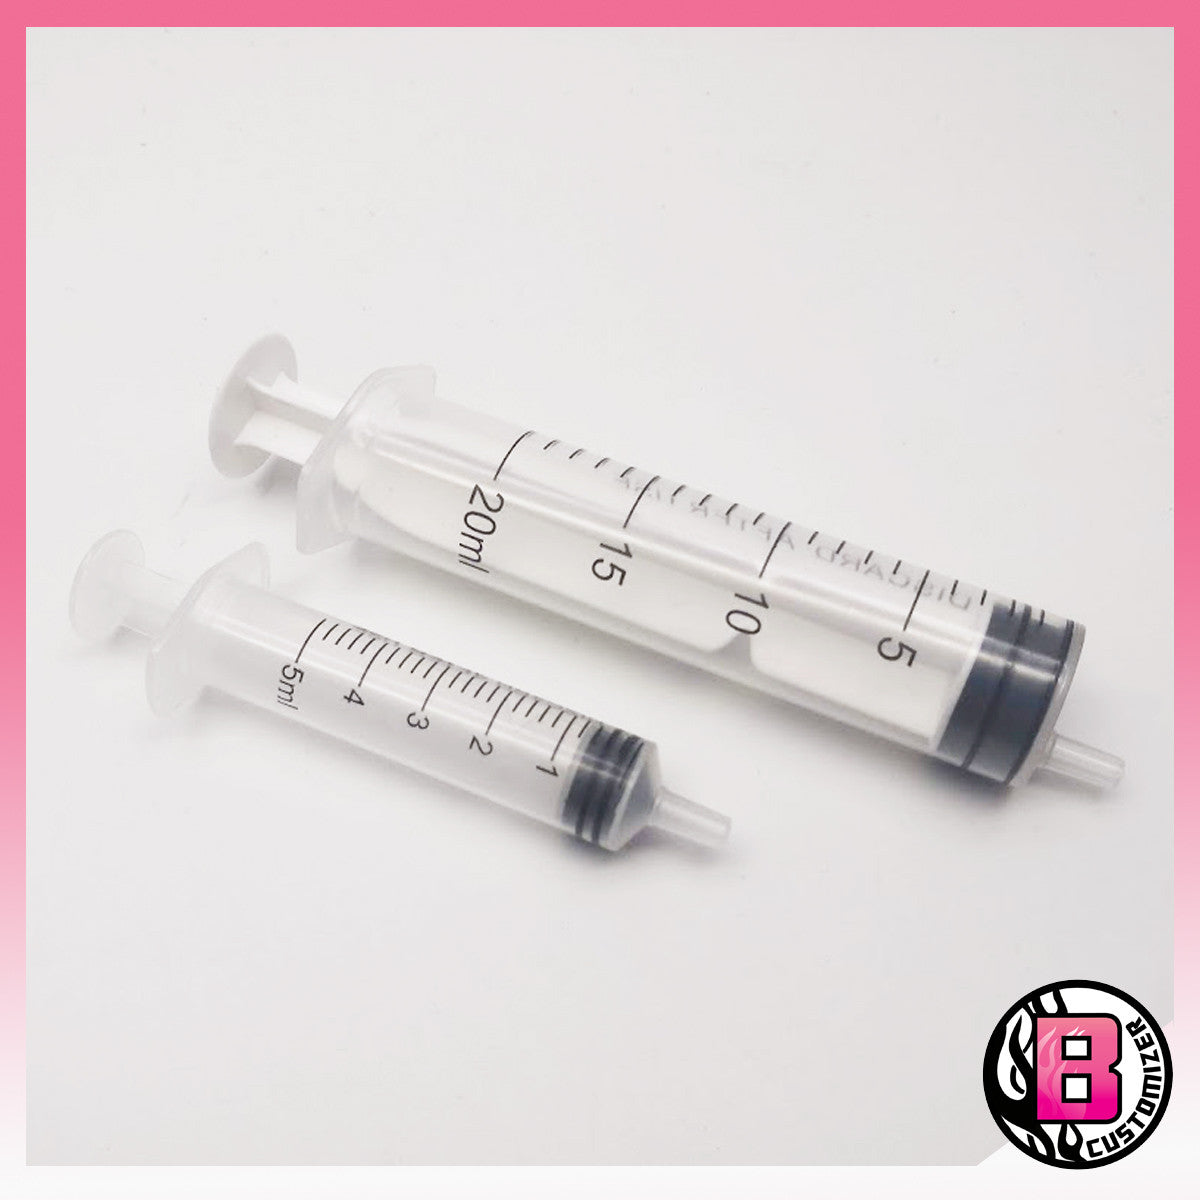 Syringe without needle